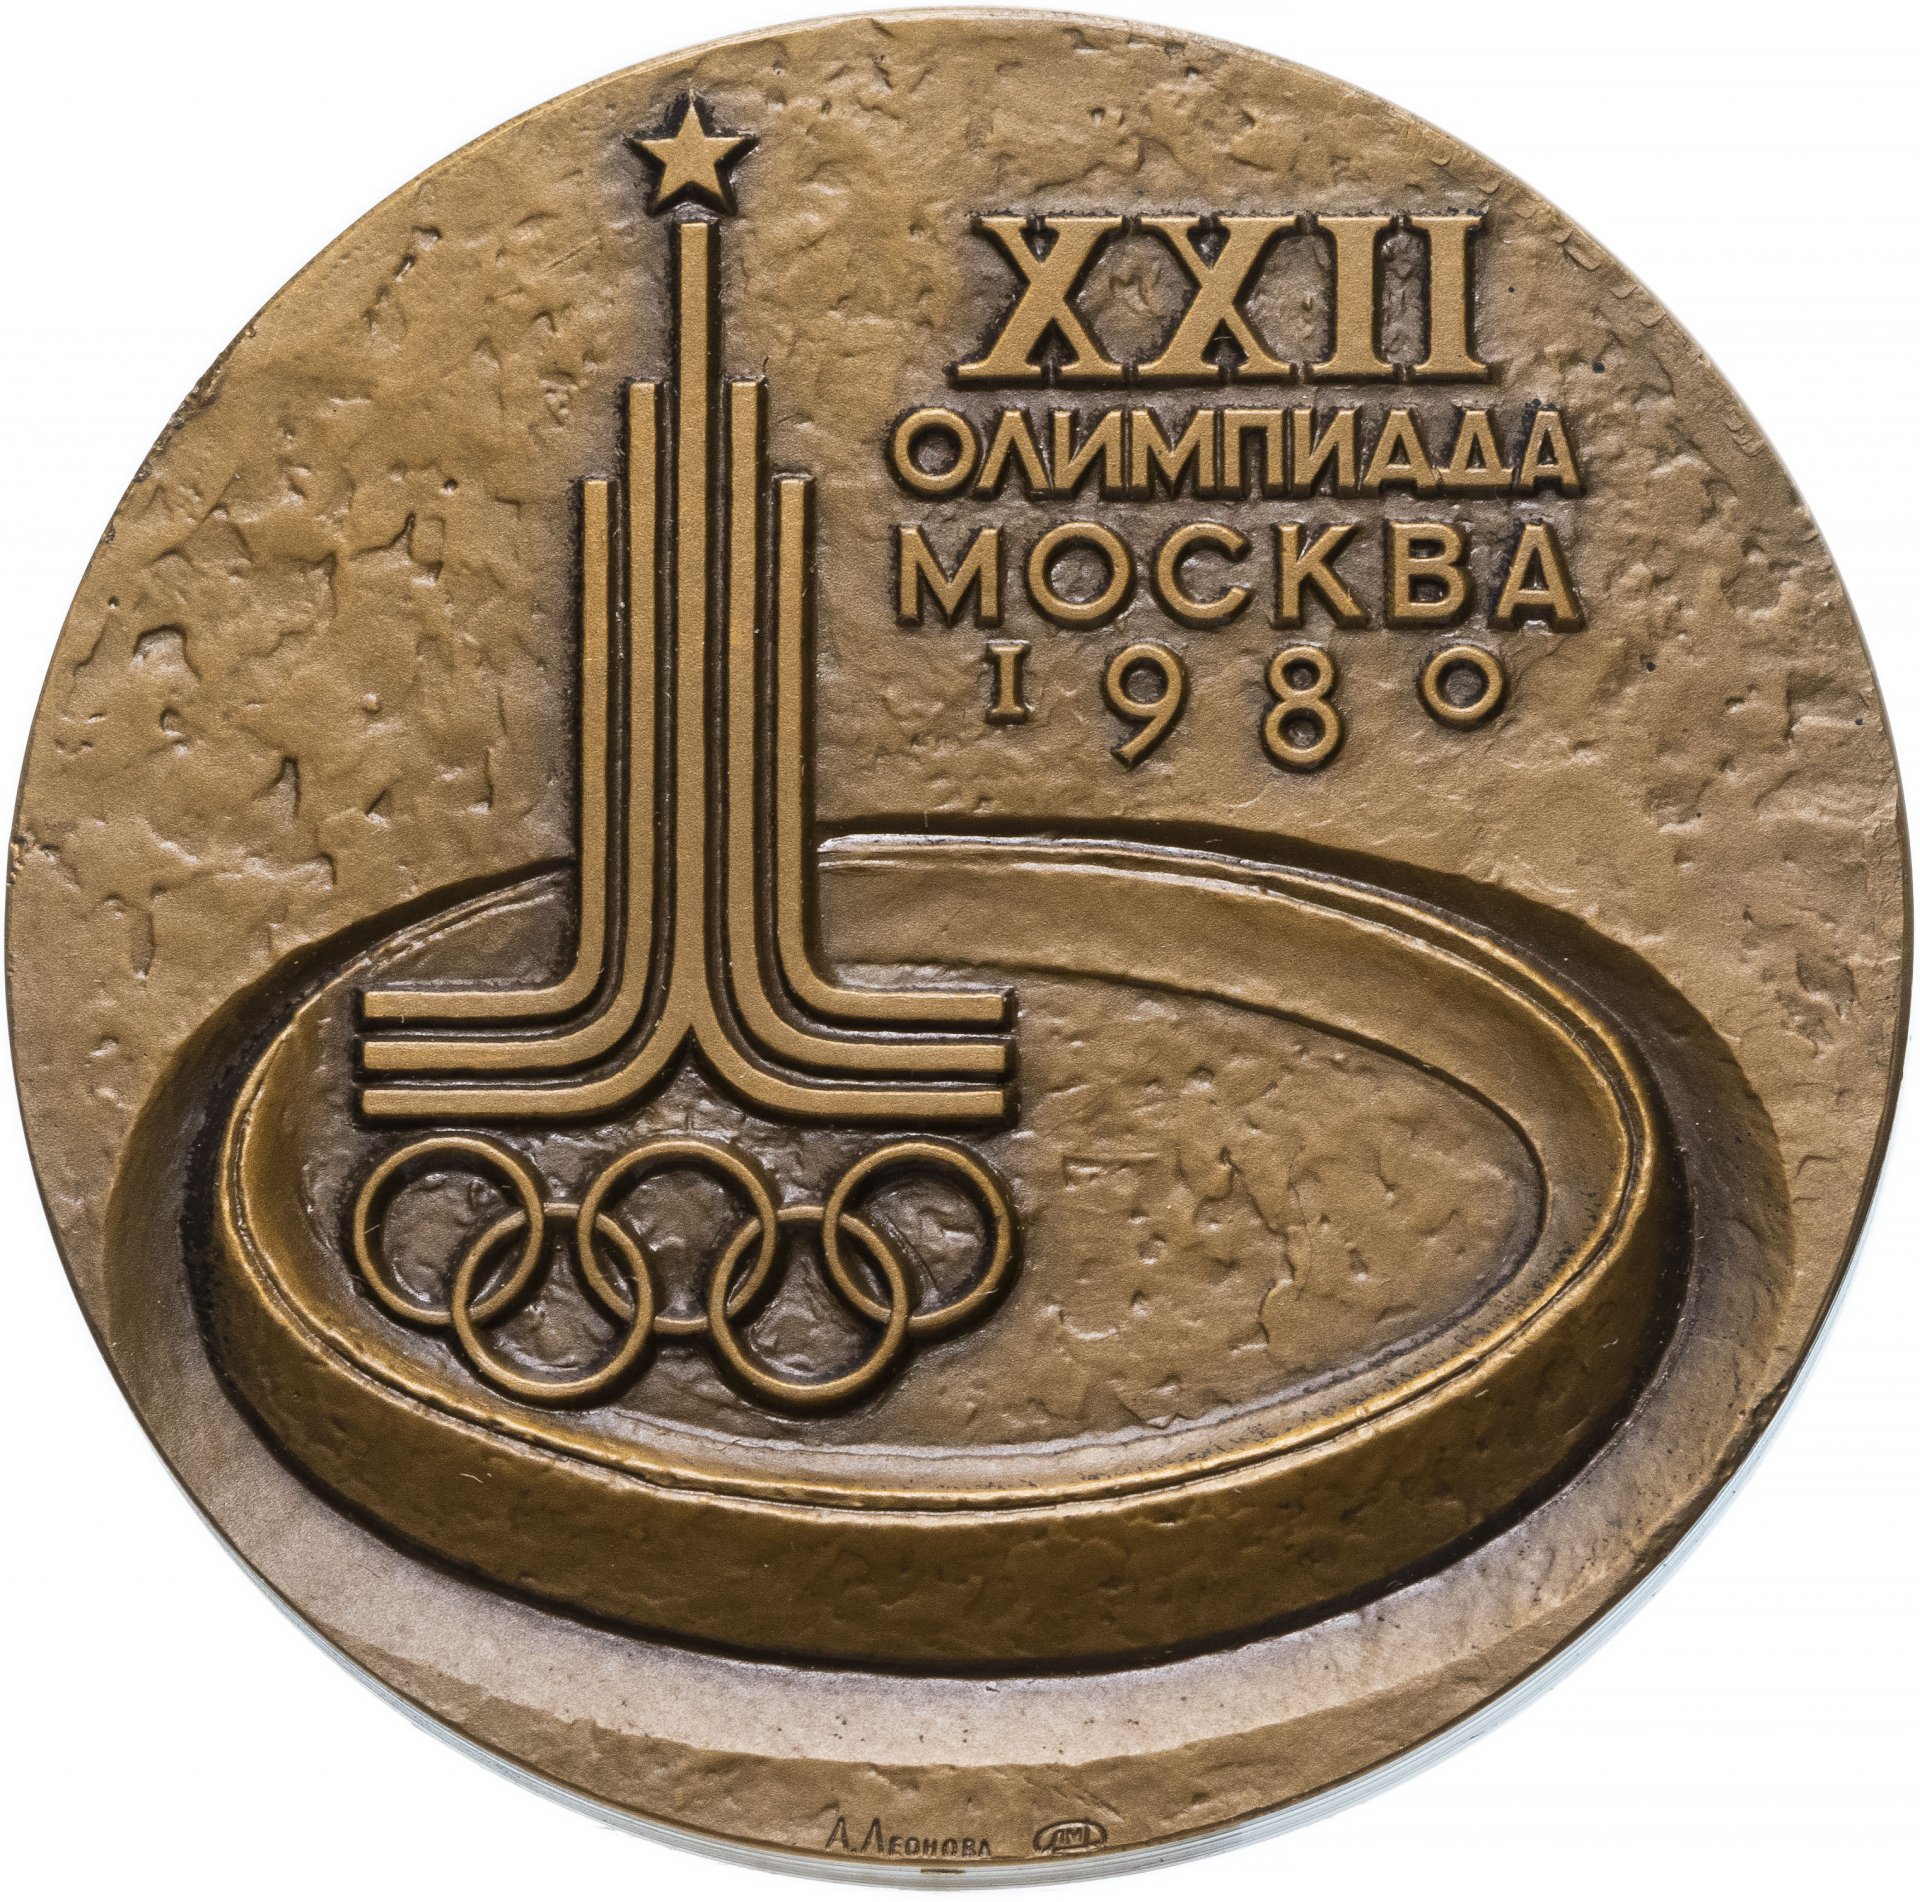 Медали прошлых лет. Олимпийские медали Москва 1980. Медаль Олимпийских игр в Москве в 1980 г. Игры XXII олимпиады Москва 1980 медаль.